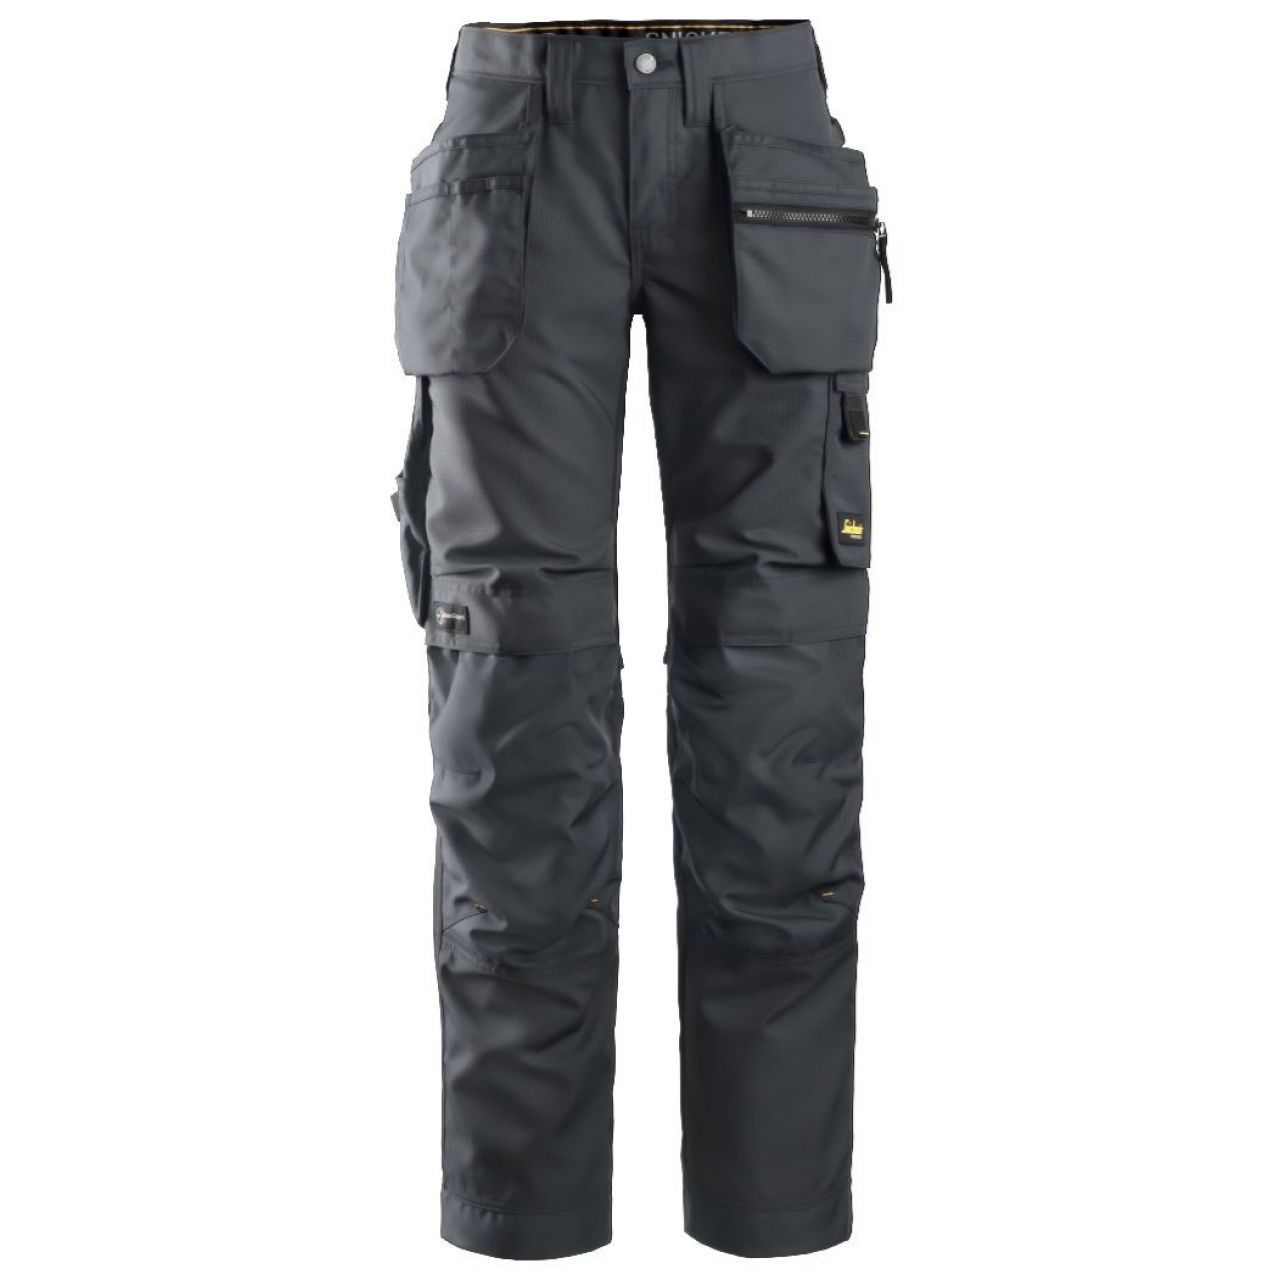 Pantalon de mujer AllroundWork+ con bolsillos flotantes gris acero-negro talla 036